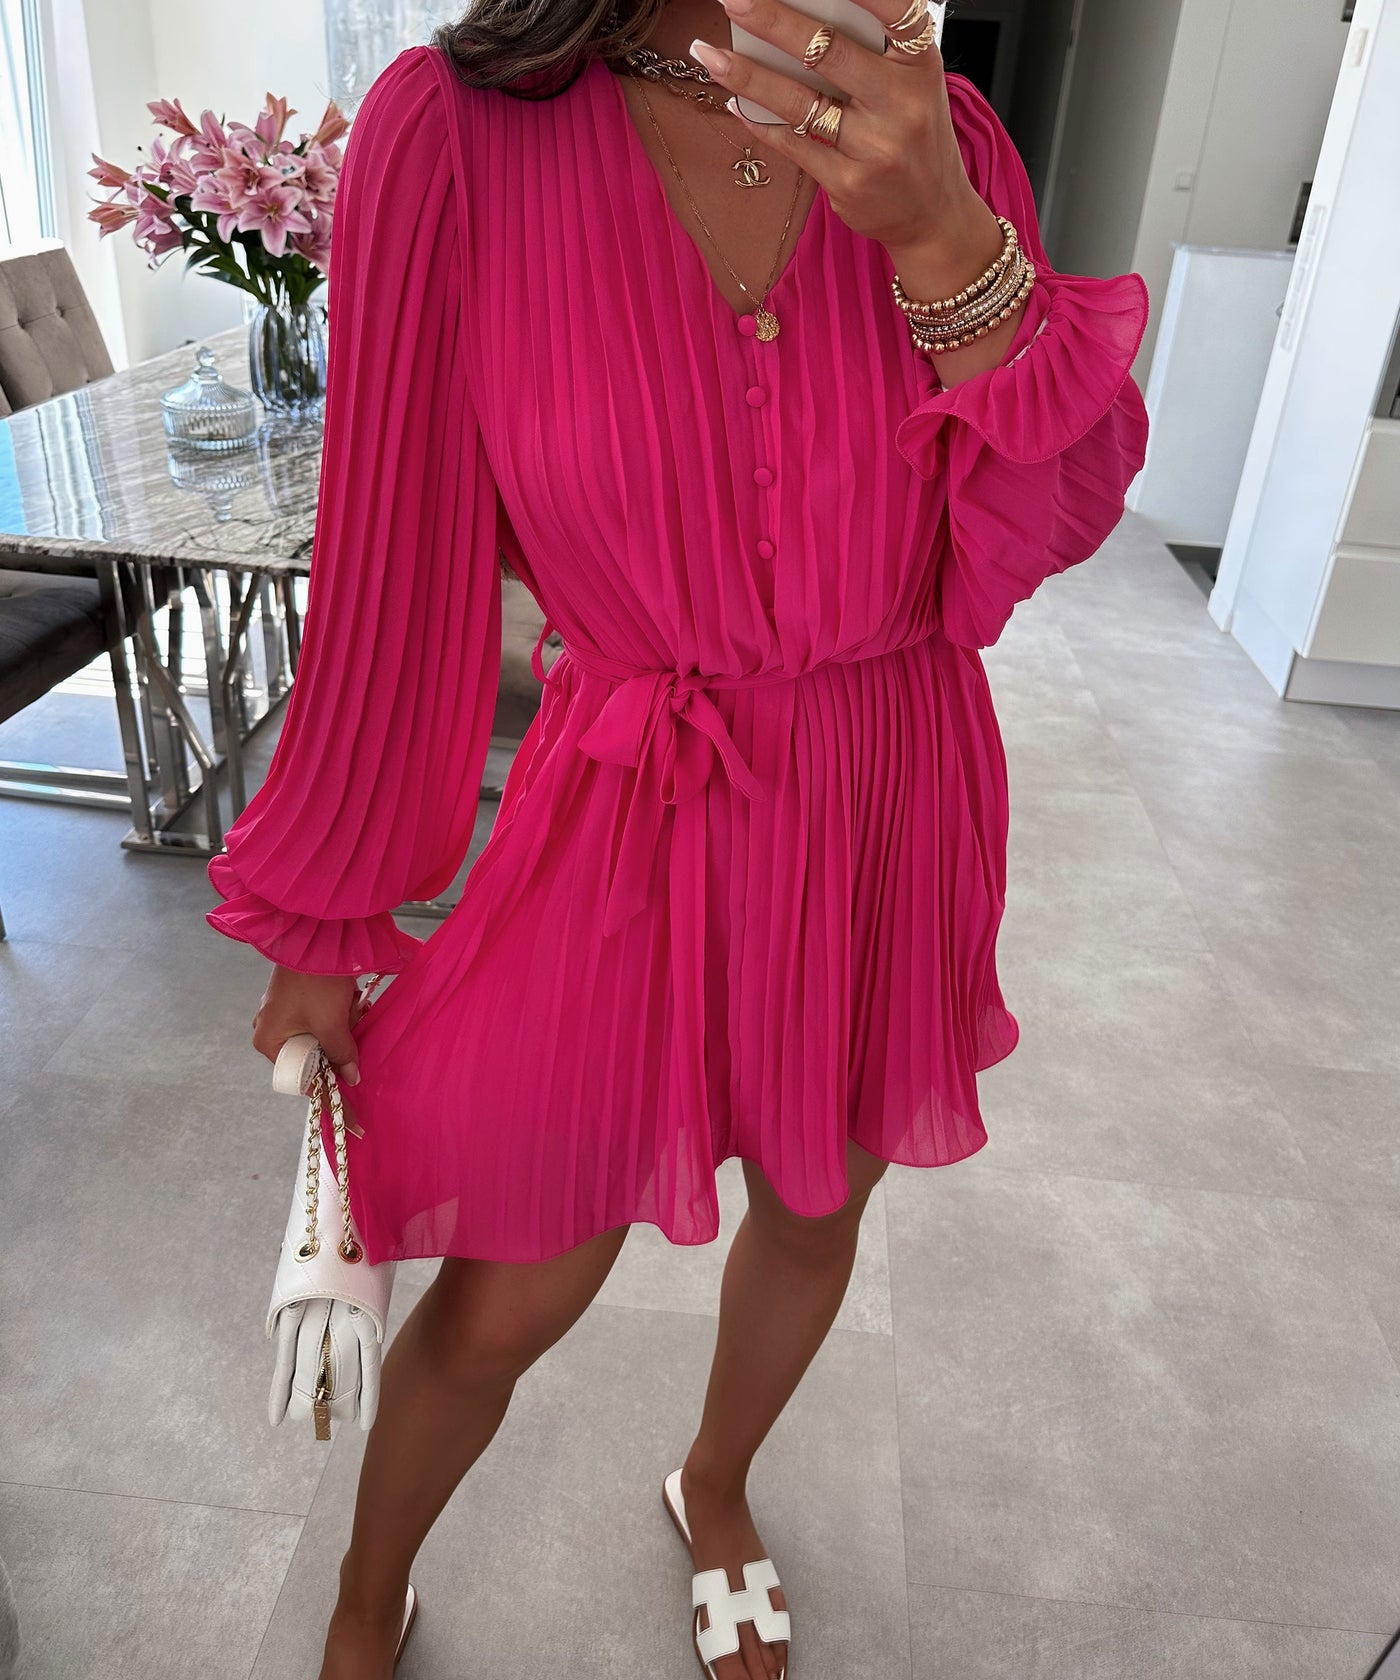 Kleid Ruth Pink  Ladypolitan - Fashion Onlineshop für Damen   